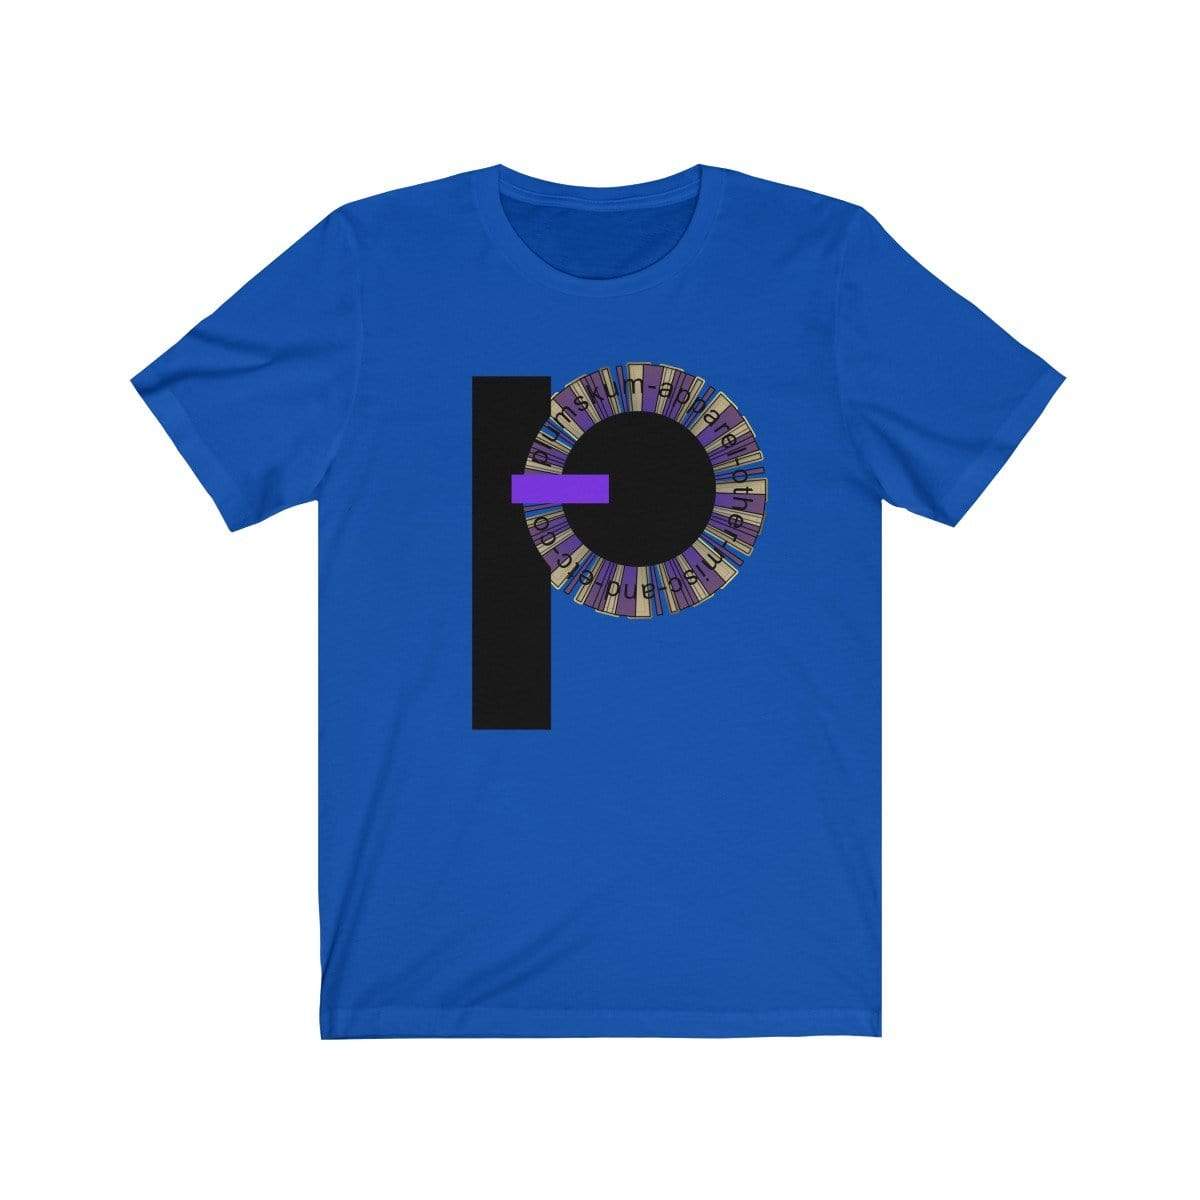 Printify T-Shirt True Royal / XS Plumskum Pinwheel Etc. Co. TShirt